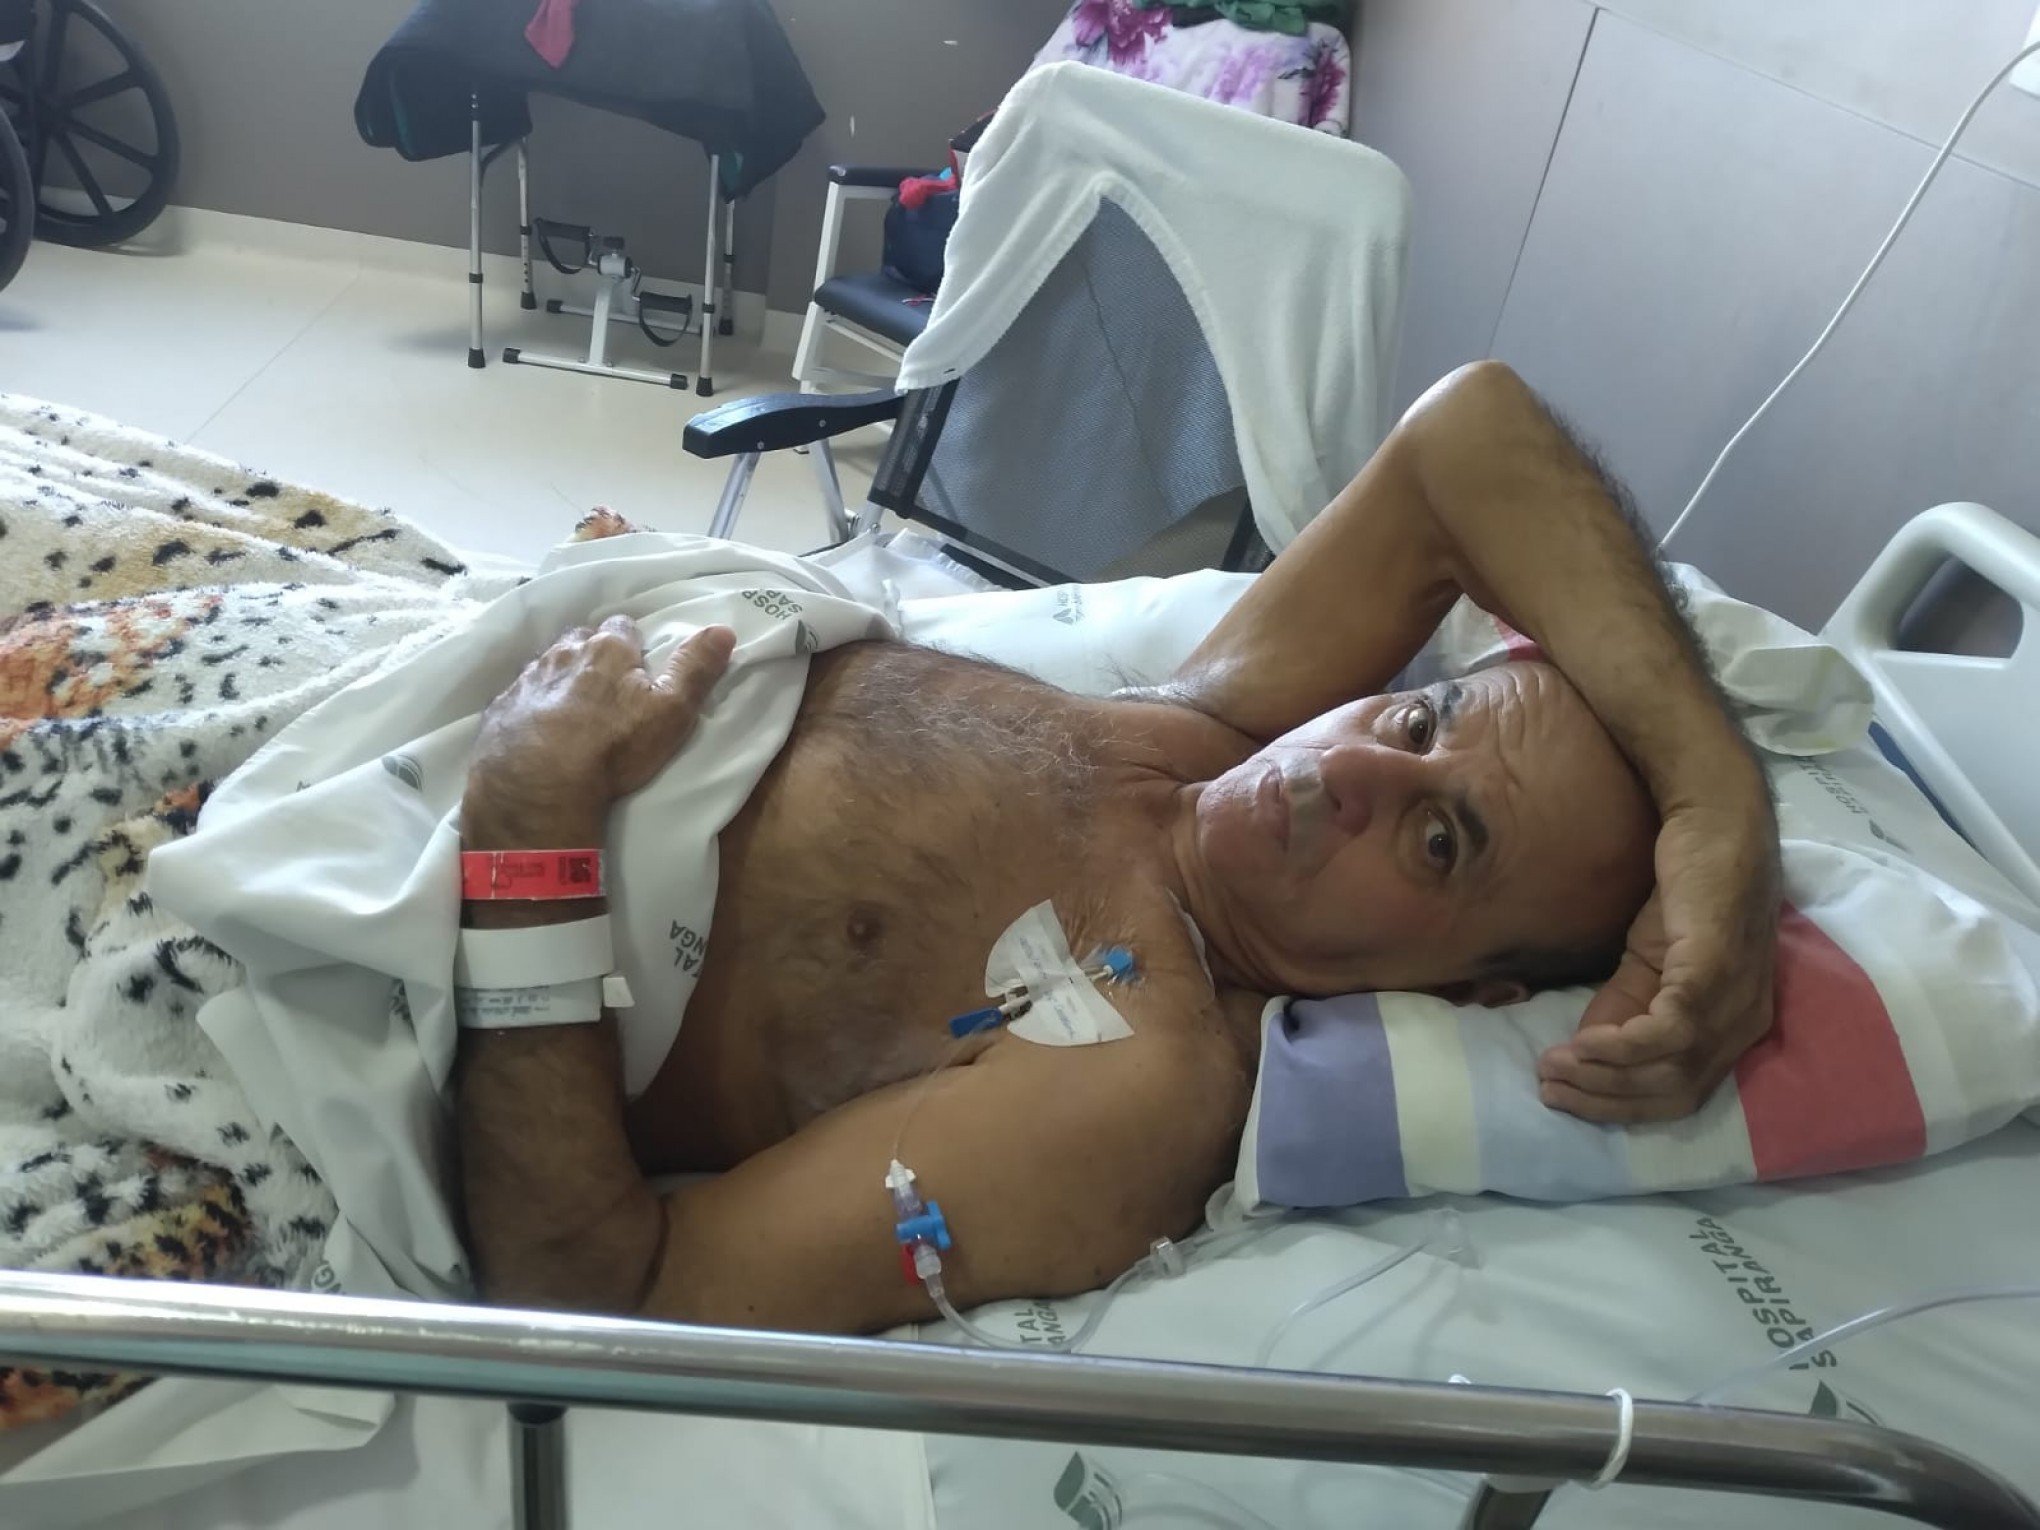 Acidente muda vida de morador que aguarda internado em hospital há 6 meses por cirurgia: "Desumano"